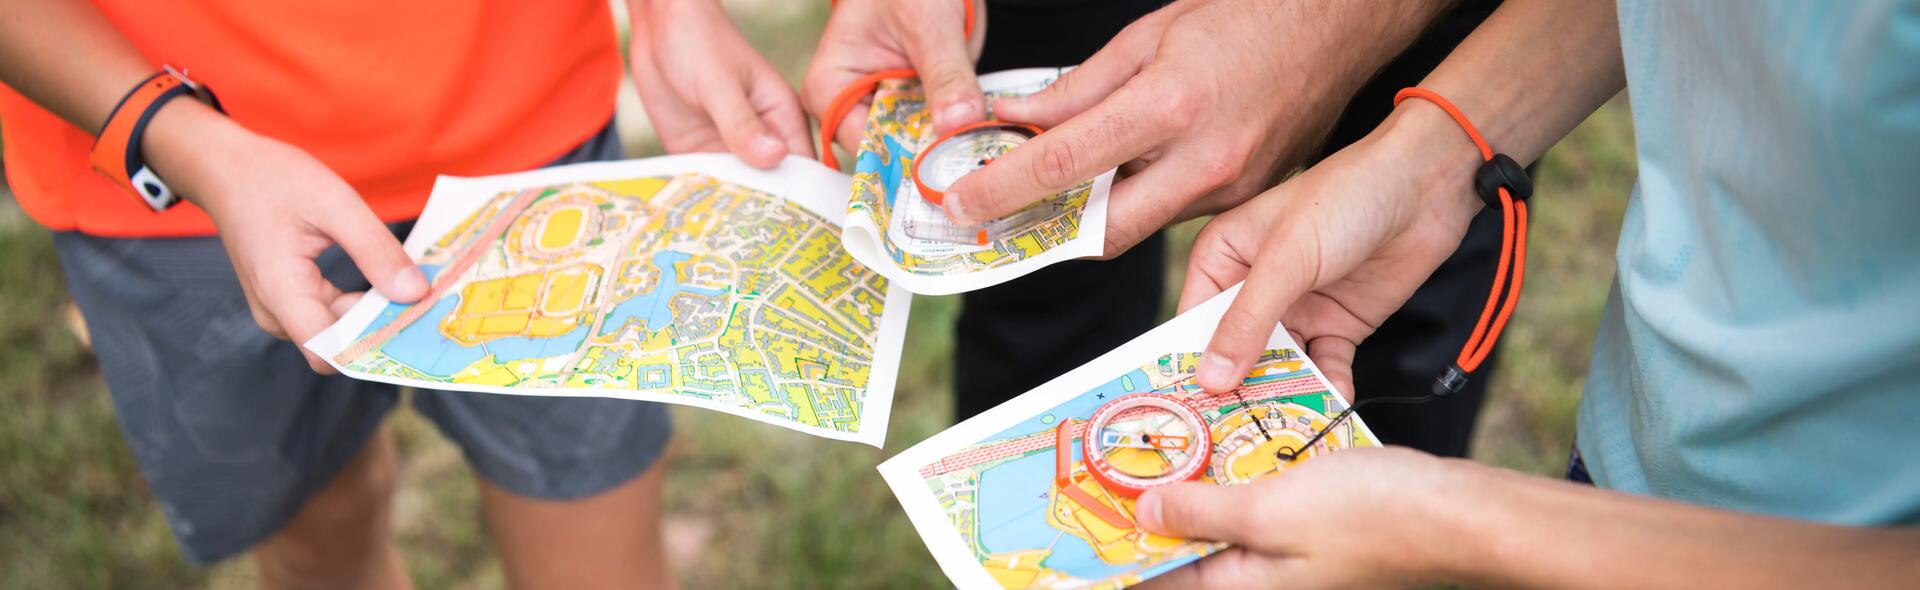 osoby trzymające mapy i kompasy turystyczne